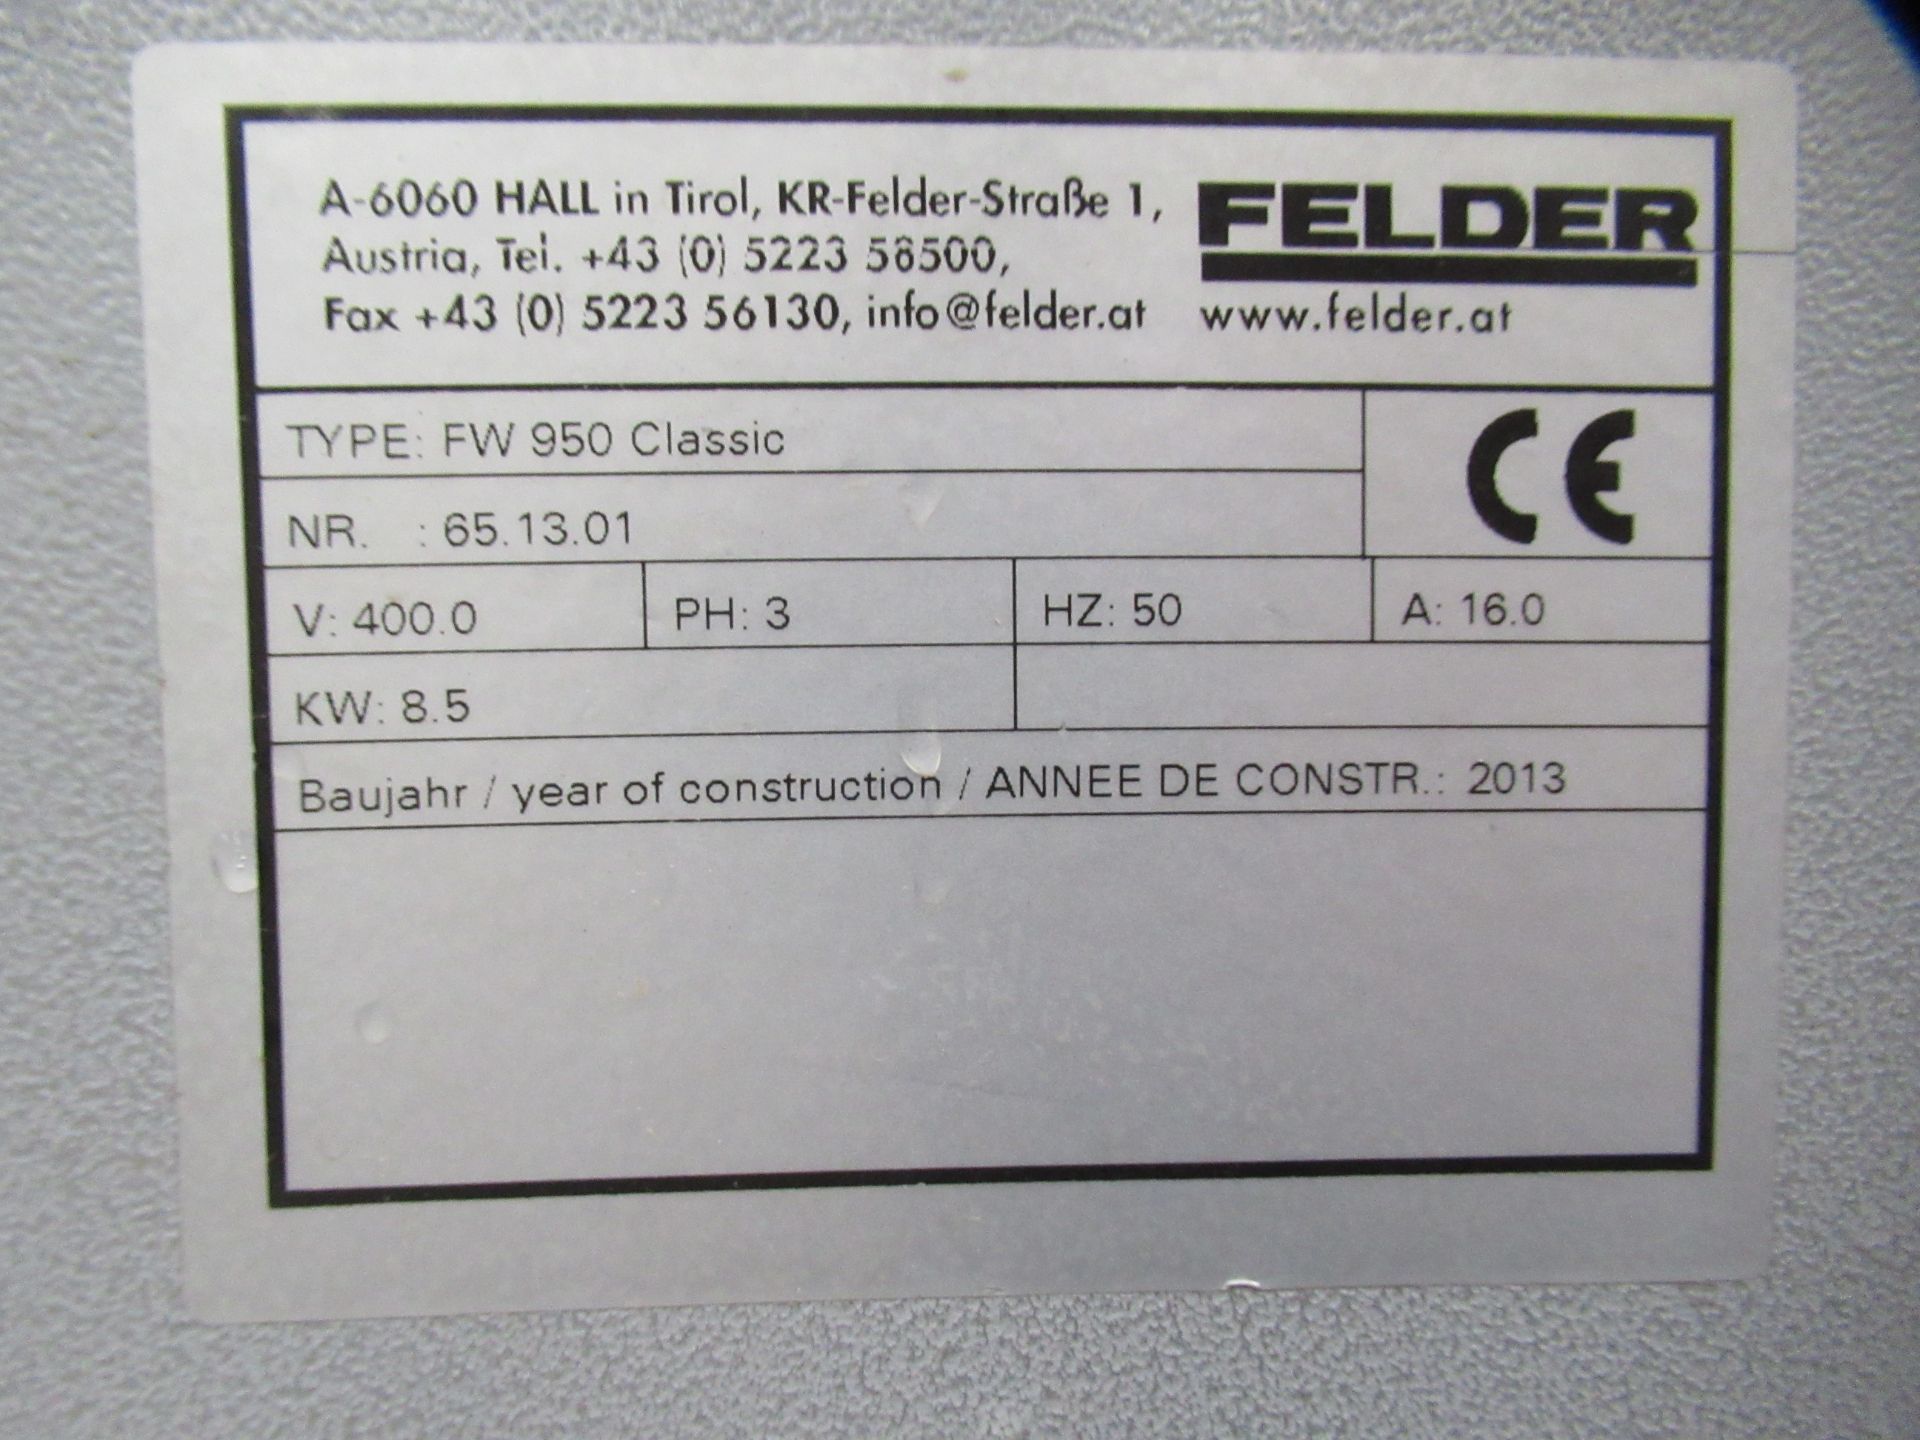 Felder FW950 Classic Horizontal Belt Sander - 3ph - Image 7 of 8